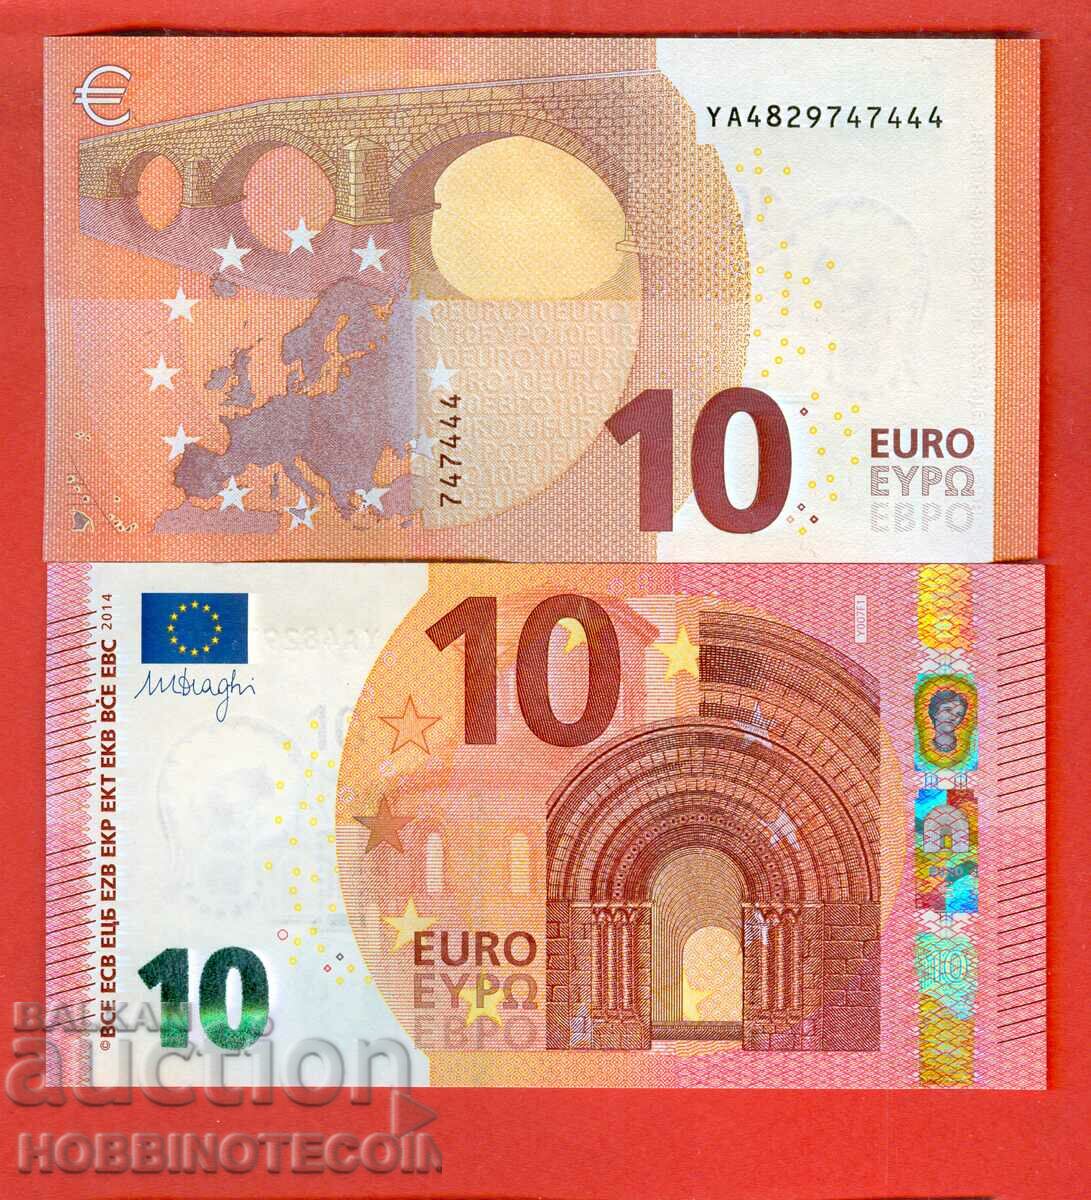 EUROPA EUROPA 10 Euro emisiunea 2014 - YA - NOU UNC